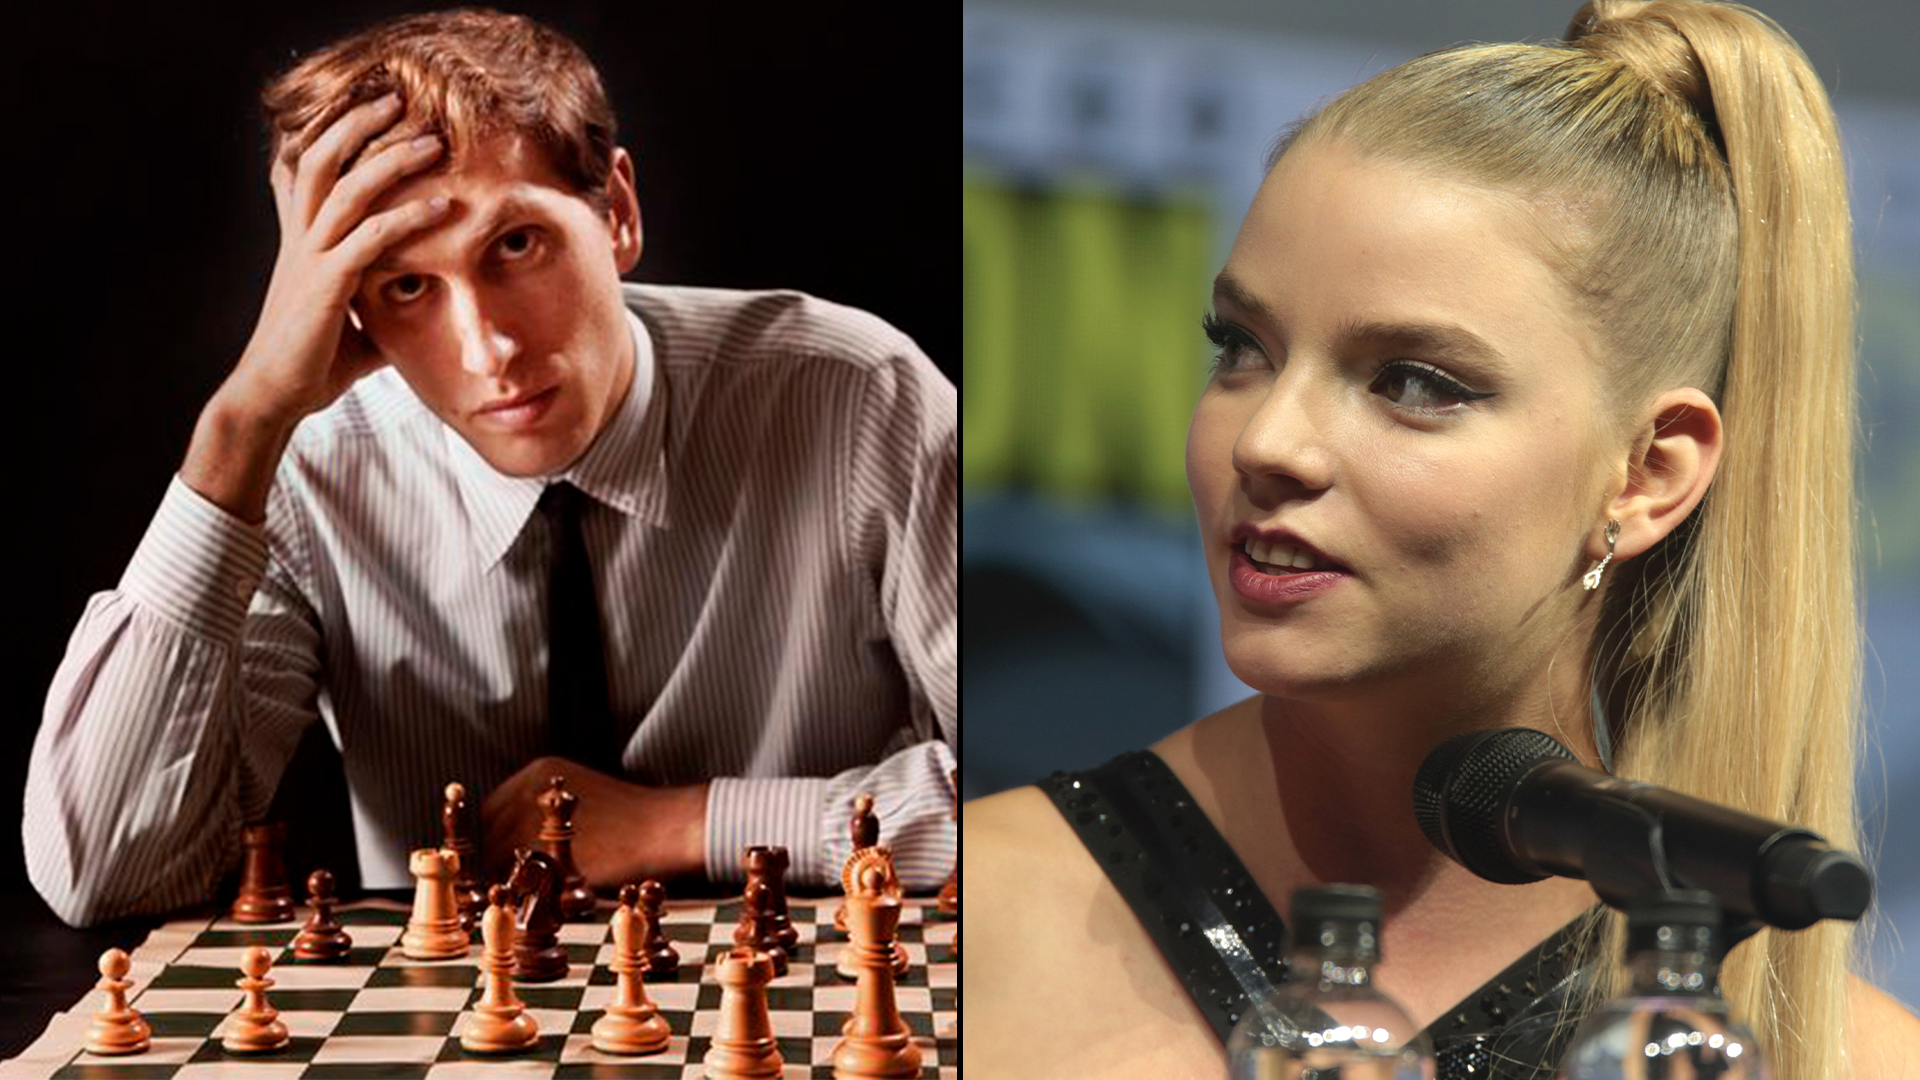 La historia de la serie "Gambito de dama", de la niña prodigio que desafía el poder ruso en el ajedrez, tiene varios puntos en común con la vida de Bobby Fischer